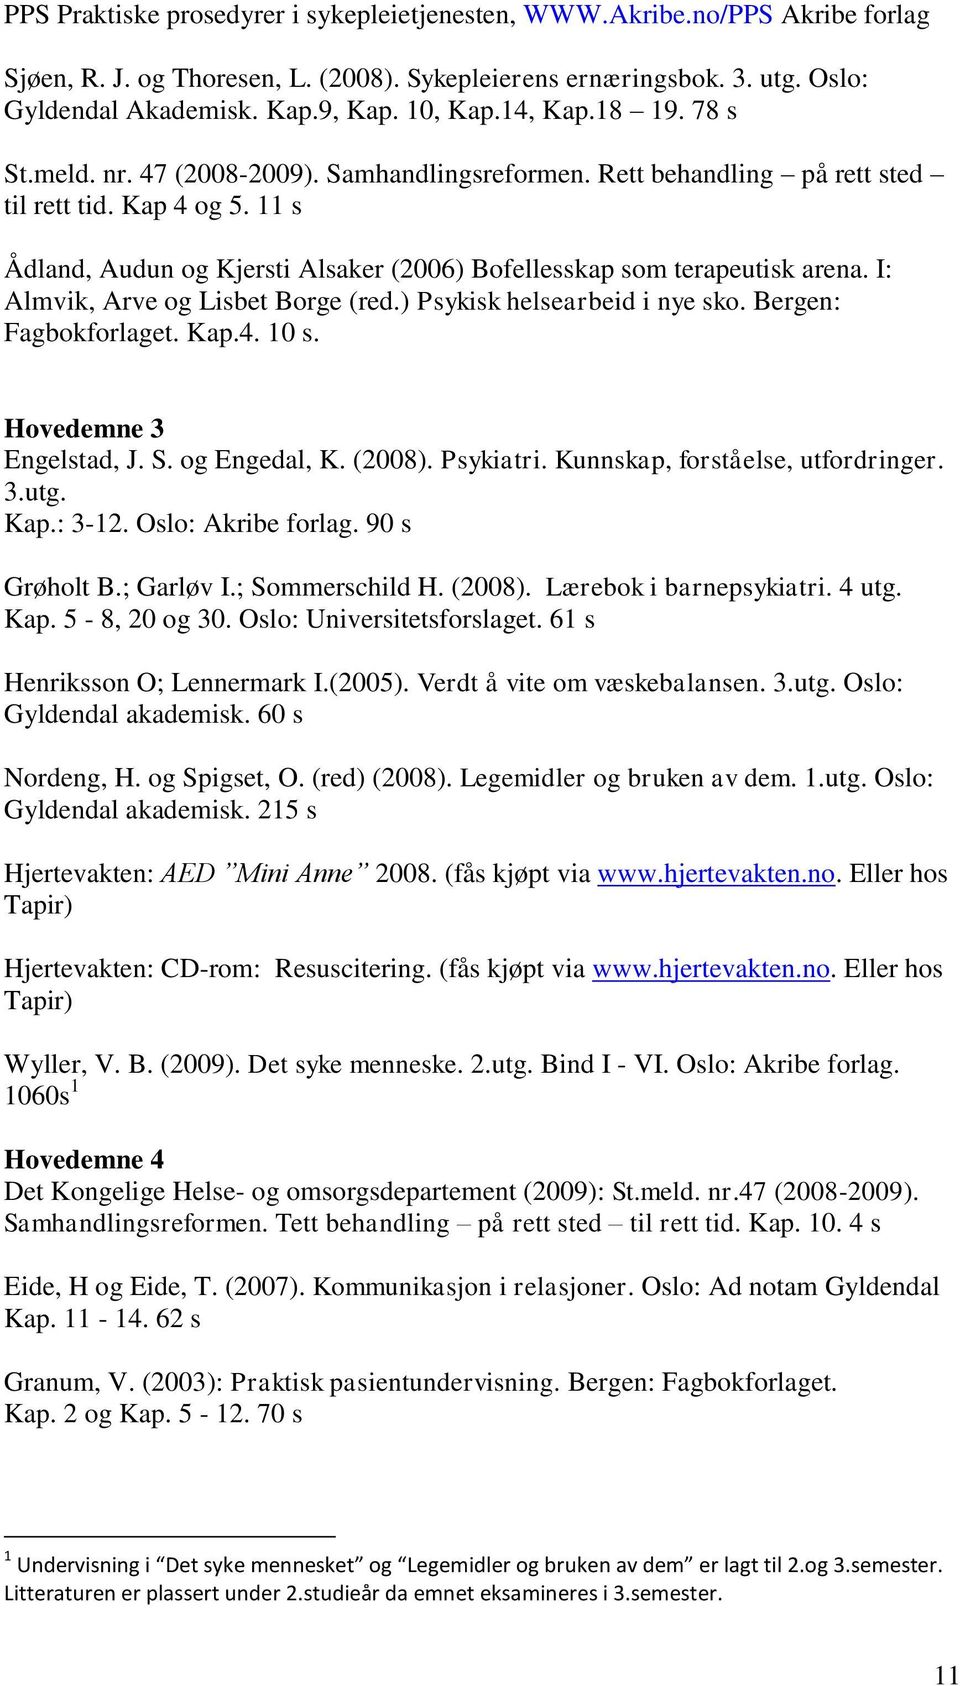 11 s Ådland, Audun og Kjersti Alsaker (2006) Bofellesskap som terapeutisk arena. I: Almvik, Arve og Lisbet Borge (red.) Psykisk helsearbeid i nye sko. Bergen: Fagbokforlaget. Kap.4. 10 s.